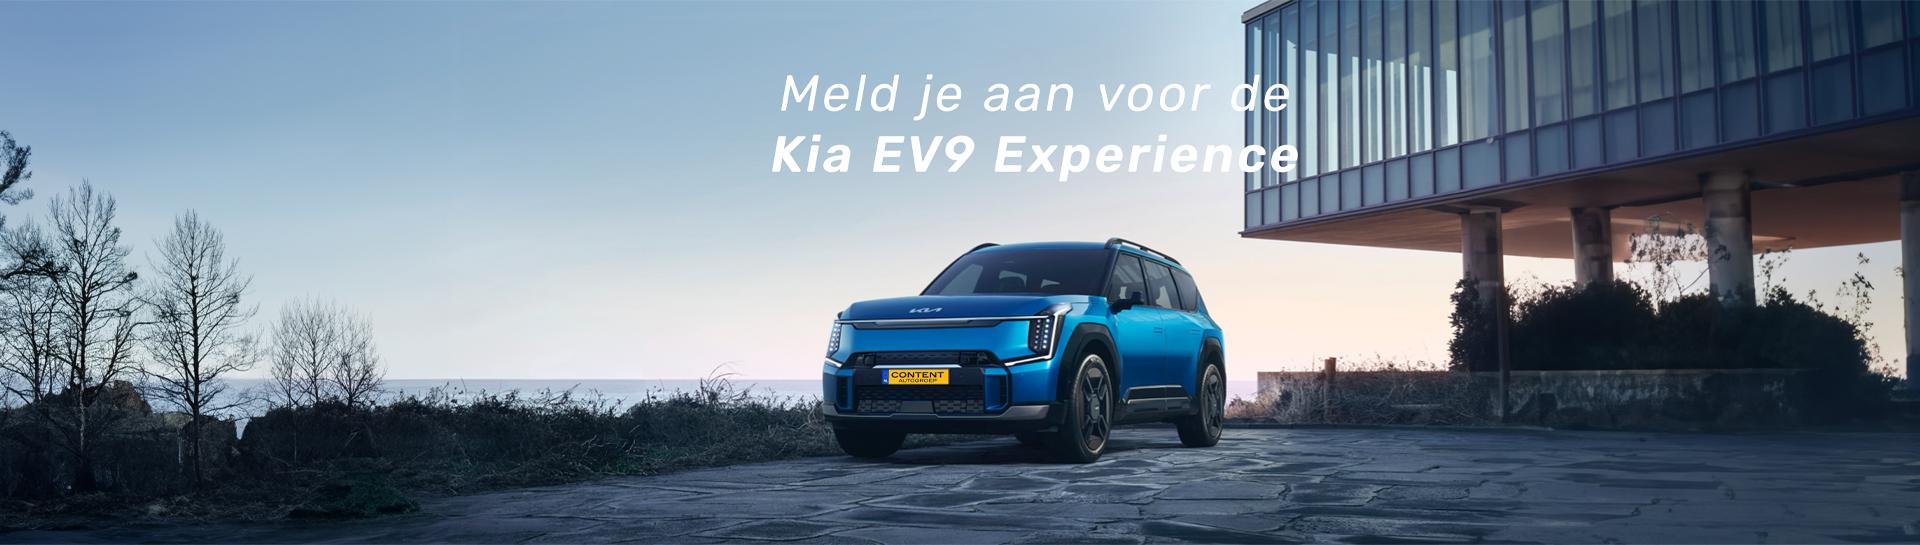 Kia EV9 Experience in Tilburg